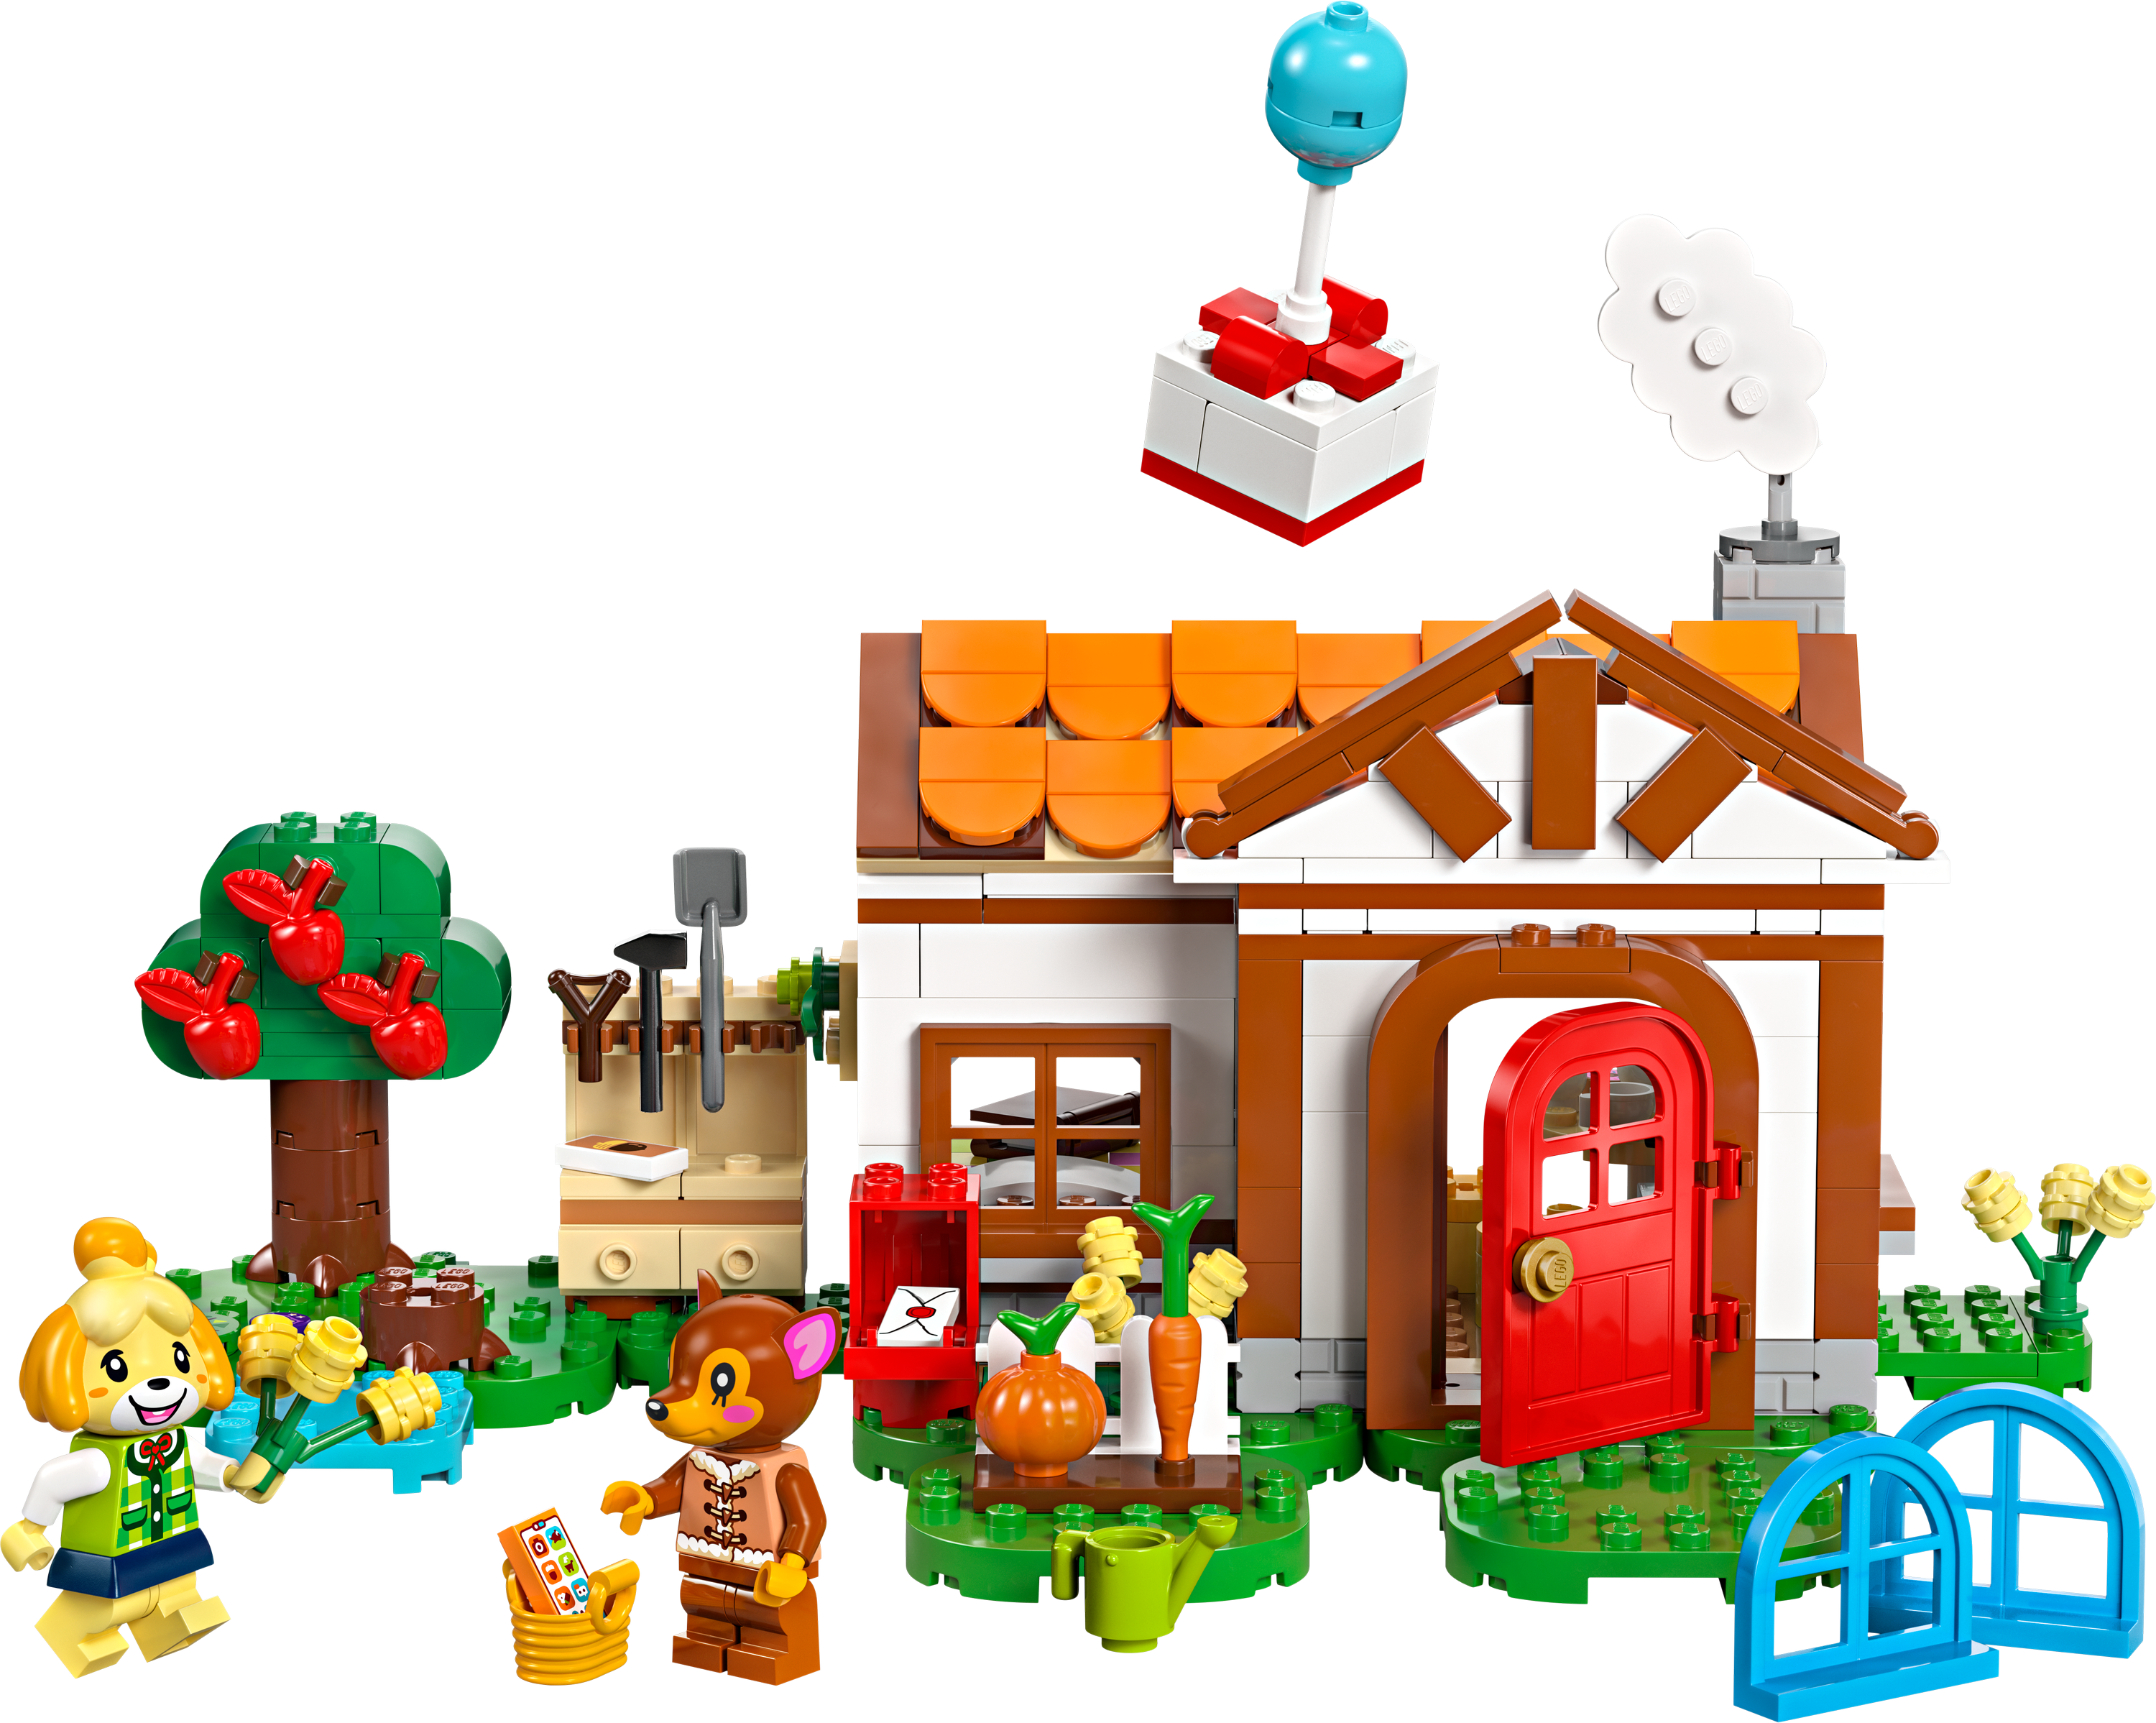 Конструктор LEGO Animal Crossing Визит в гости к Isabelle 389 деталей (77049) - фото 2